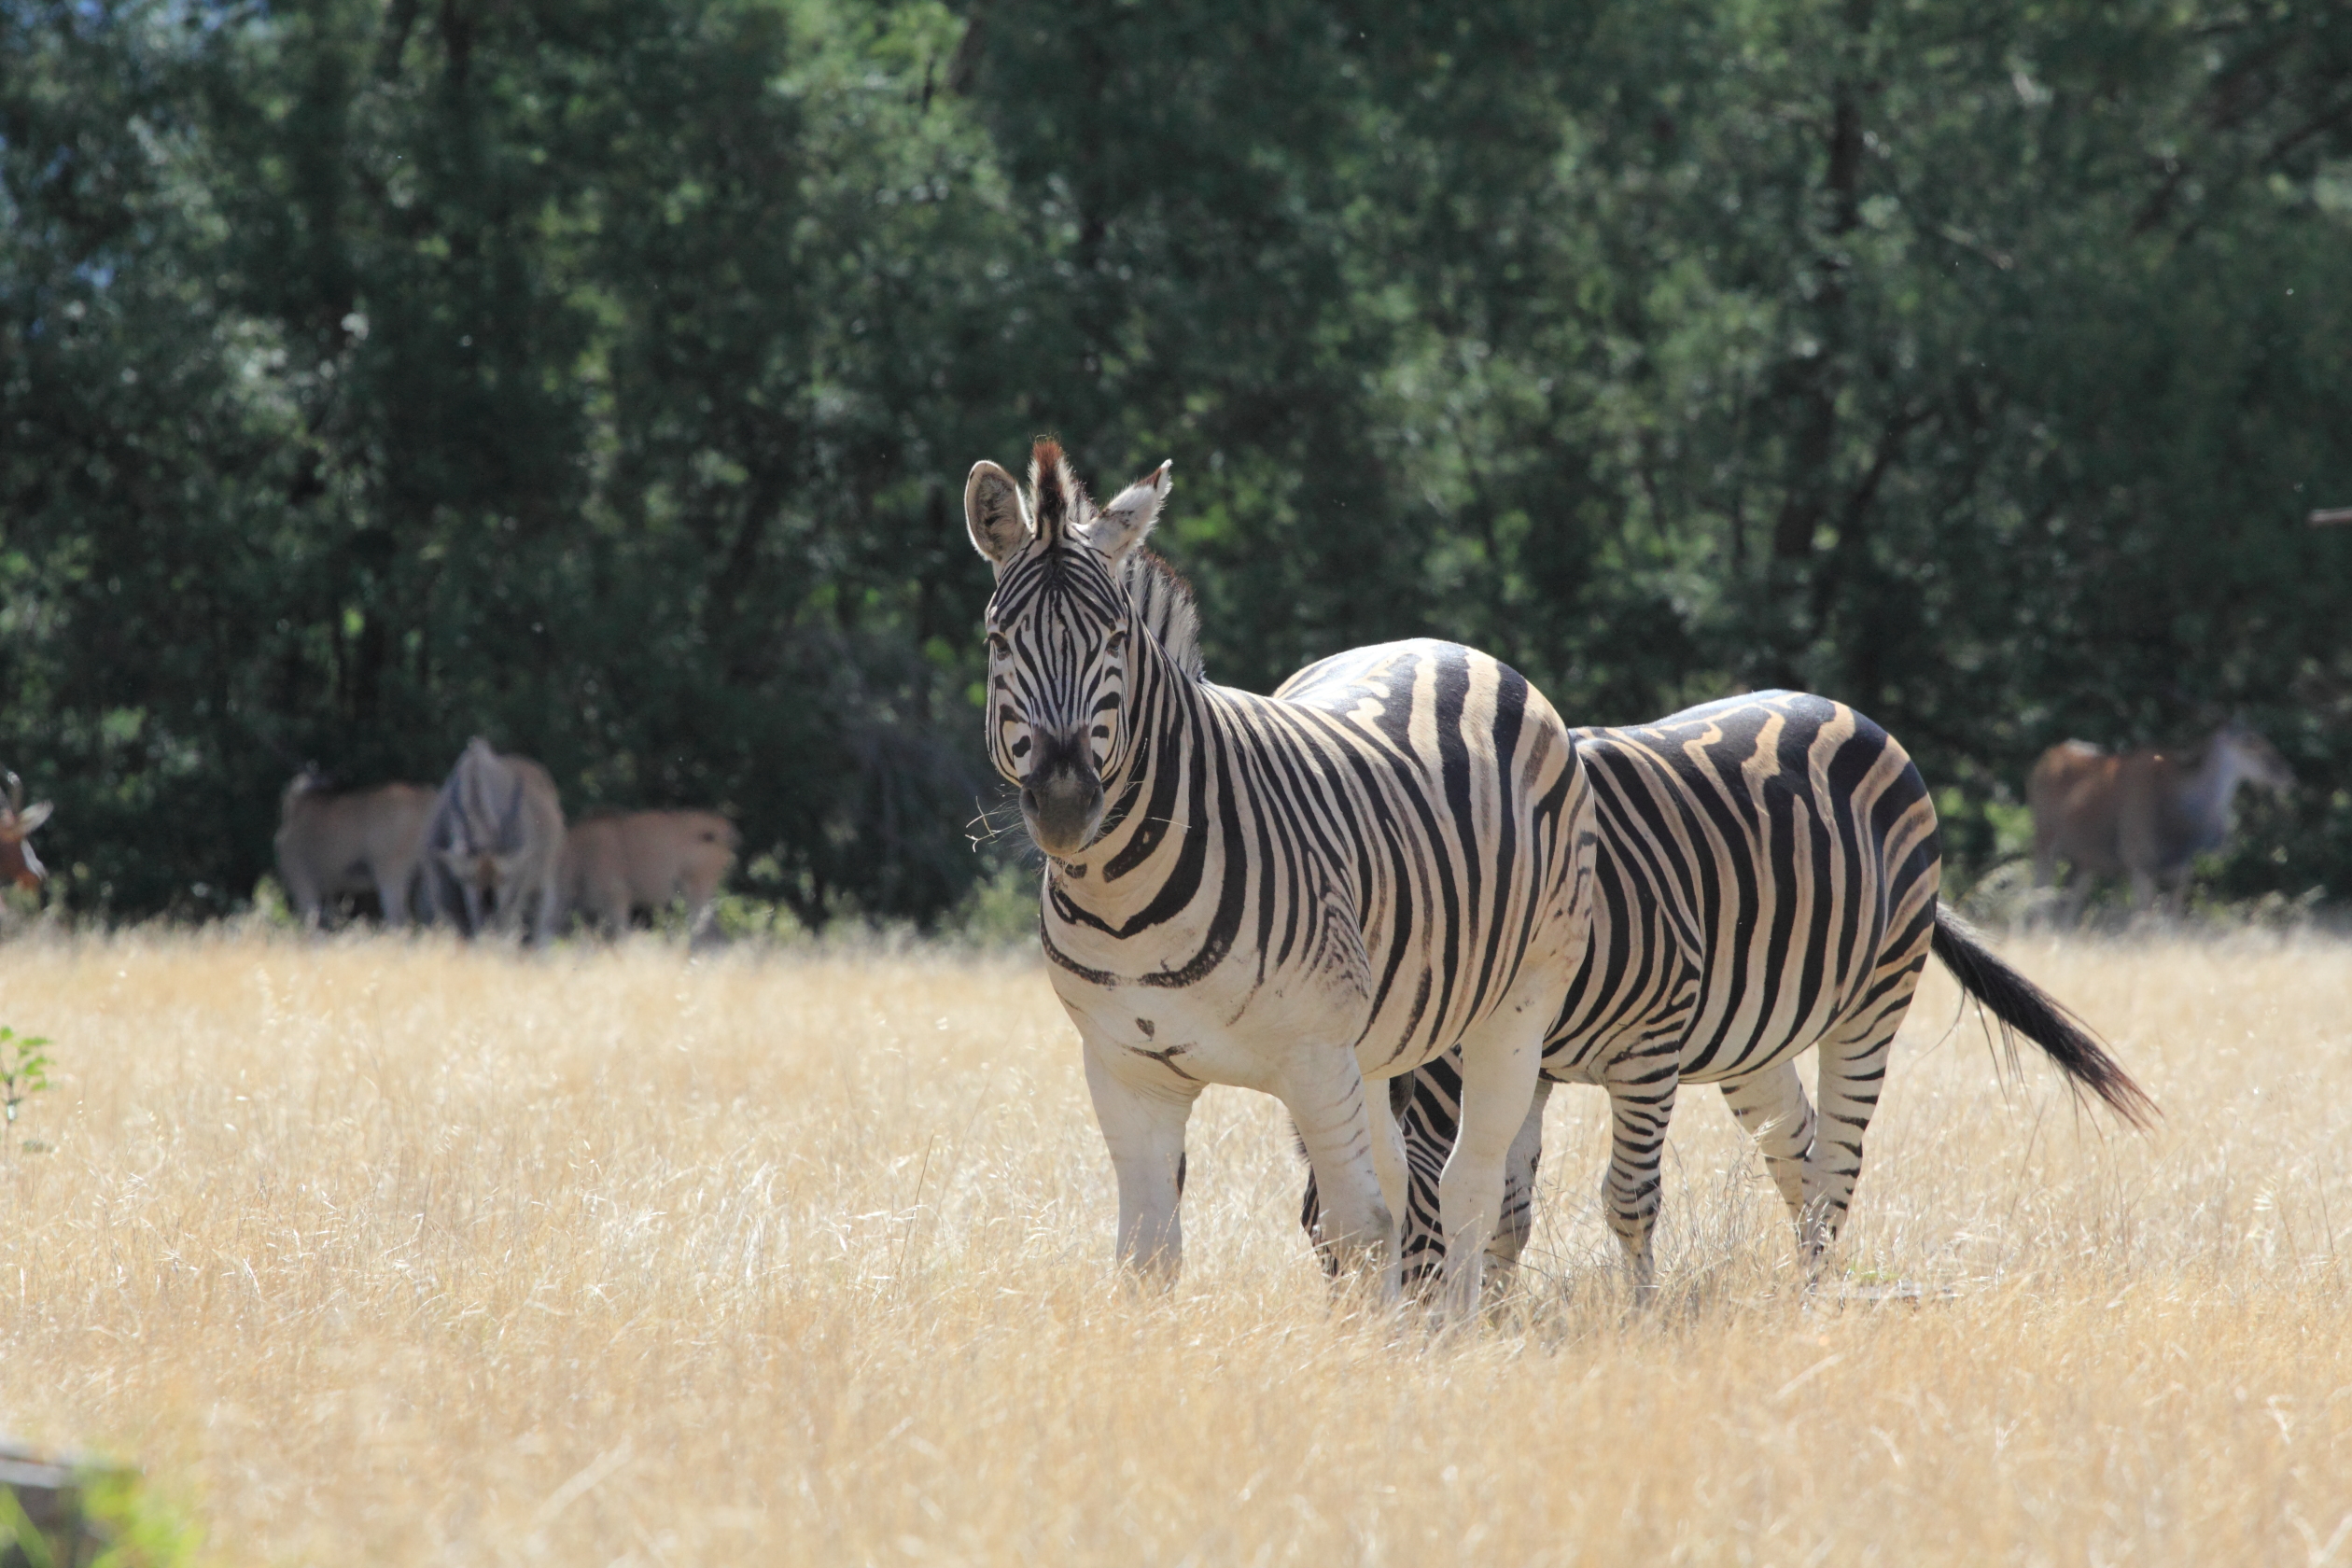 Zebras in a field.